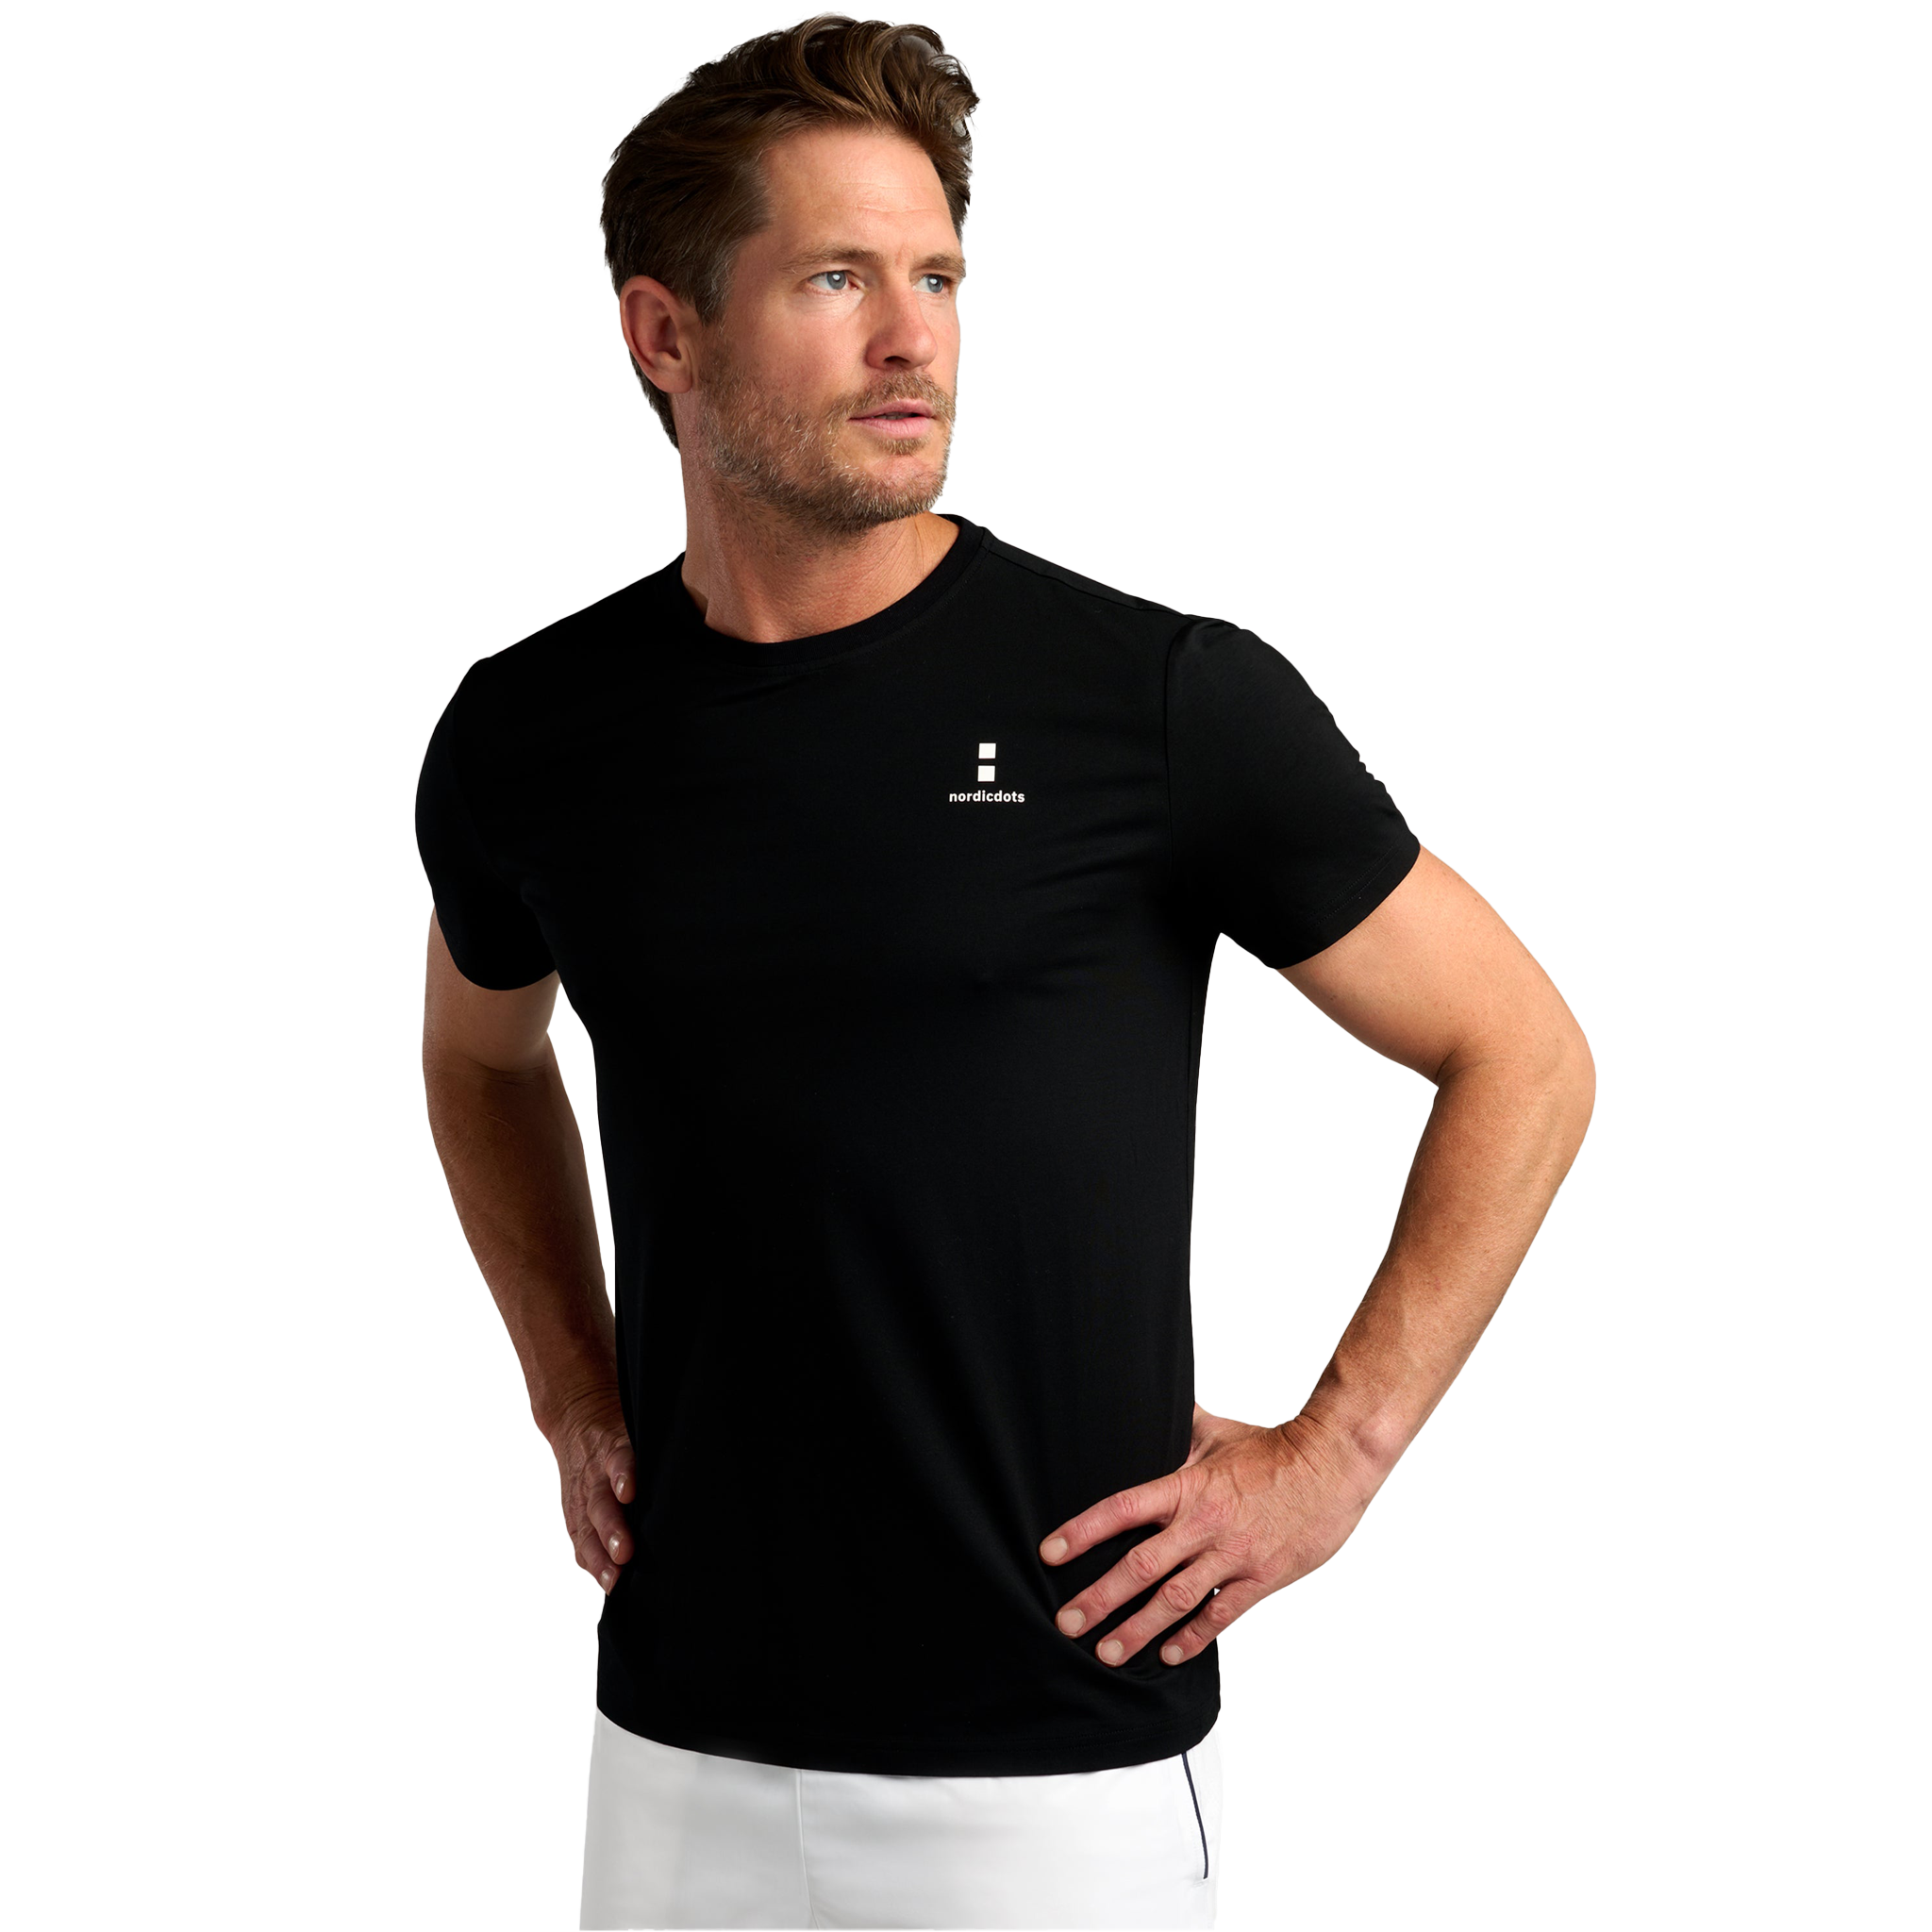 nordicdots Modal Comfort T-Shirt Black